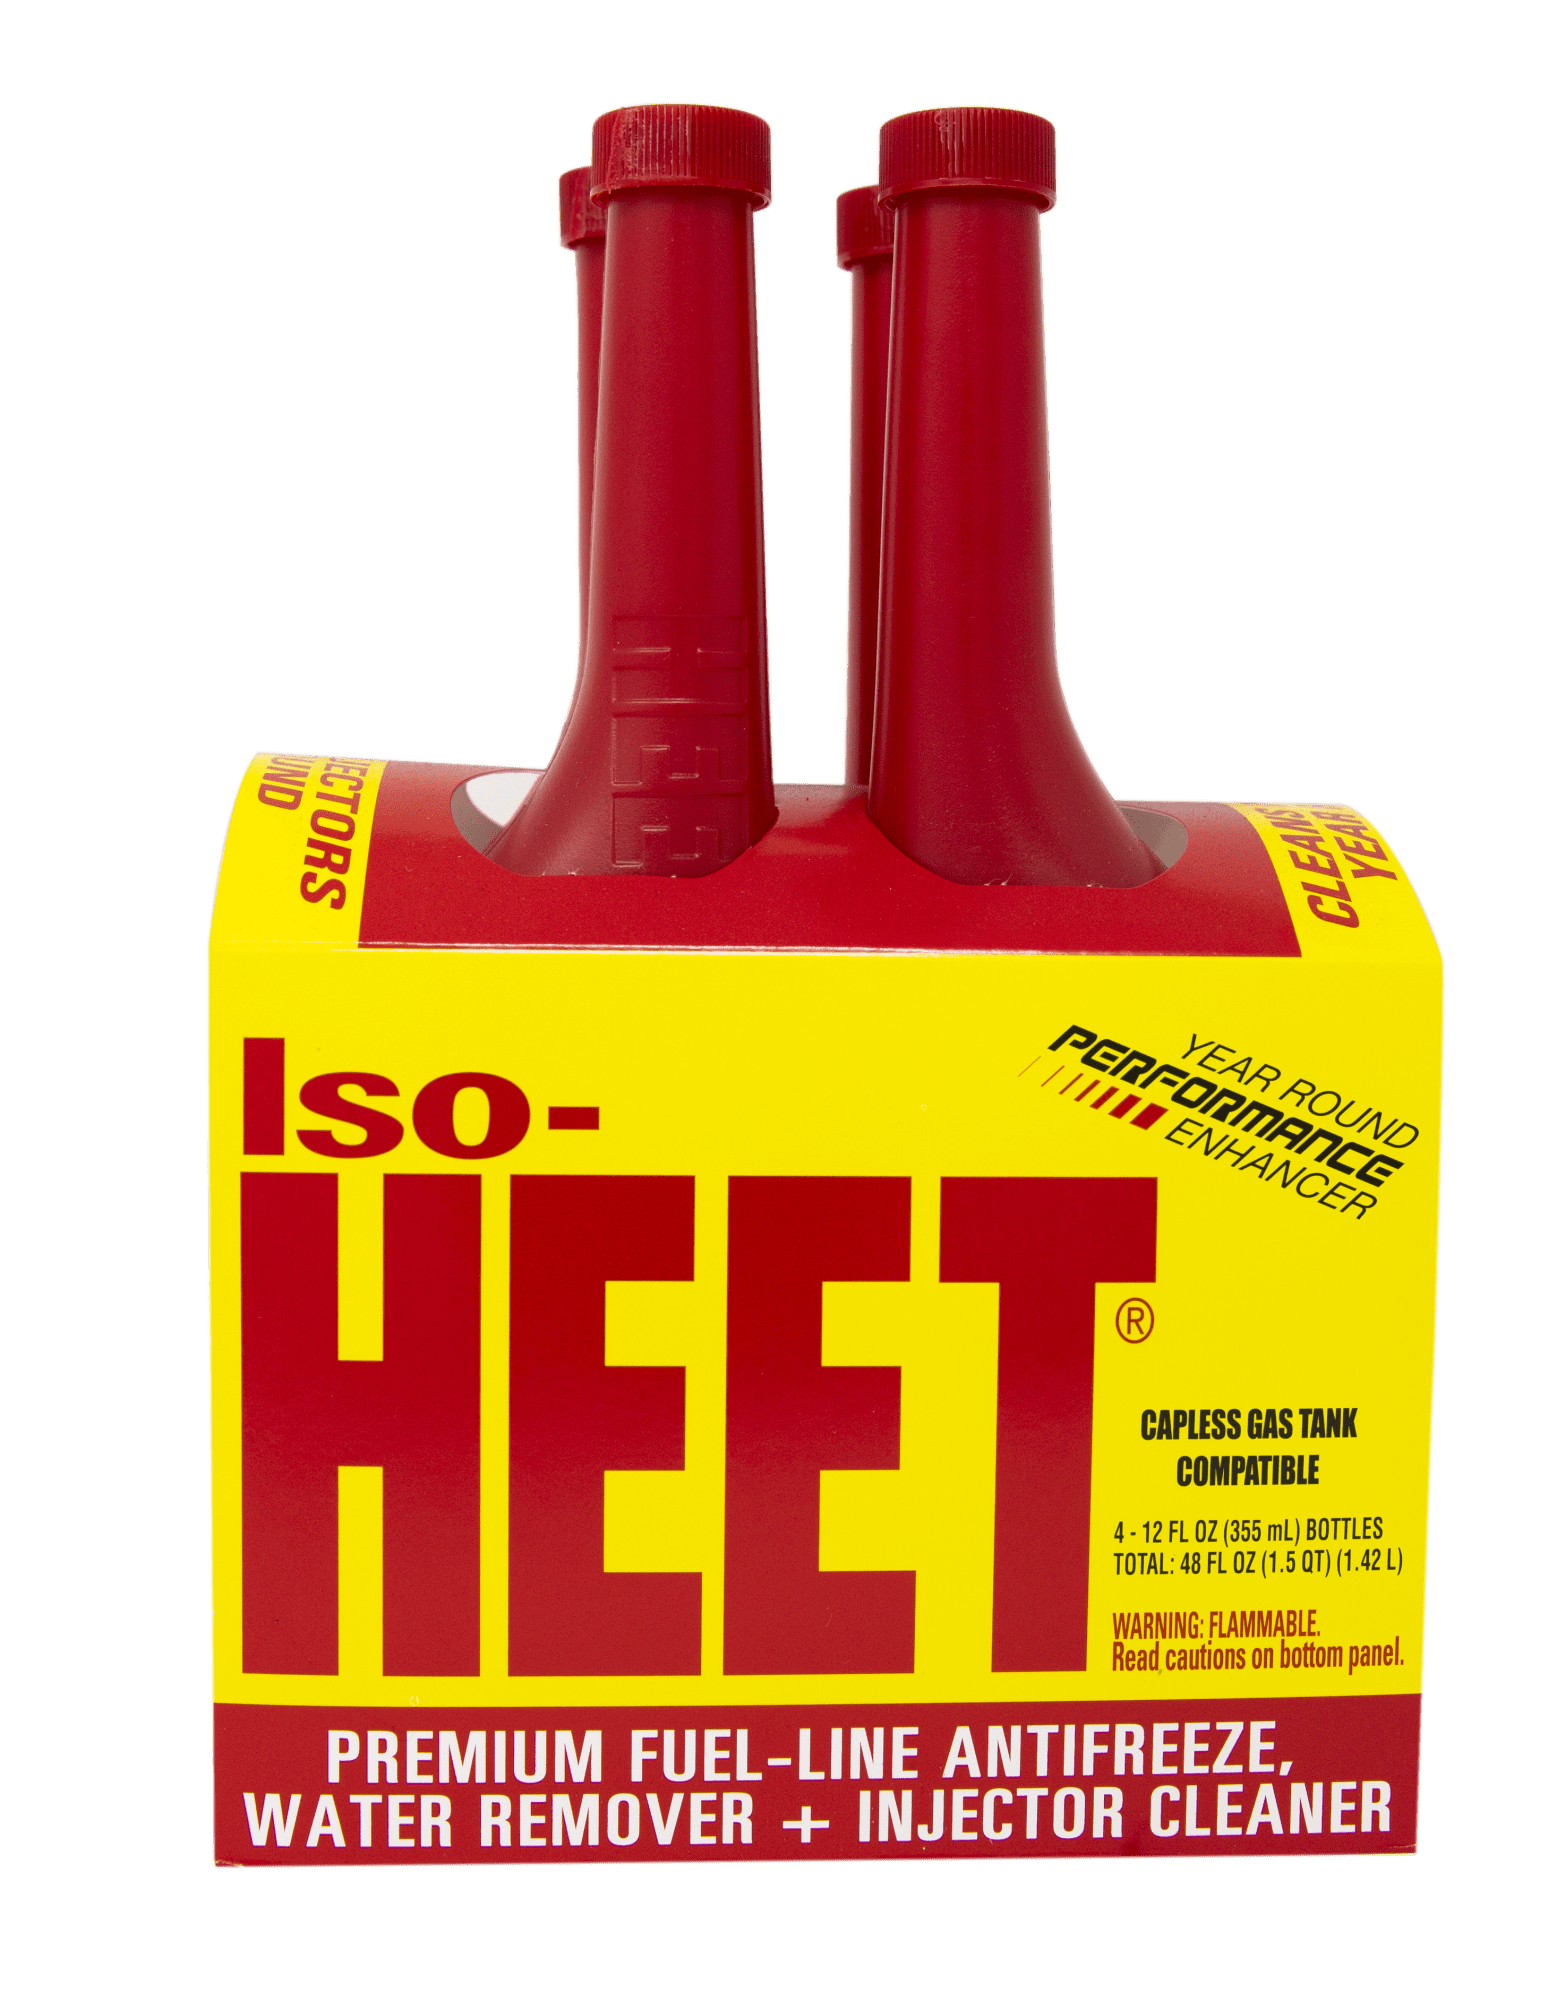 Iso-HEET® Premium Fuel-Line Antifreeze Water Remover & Injector